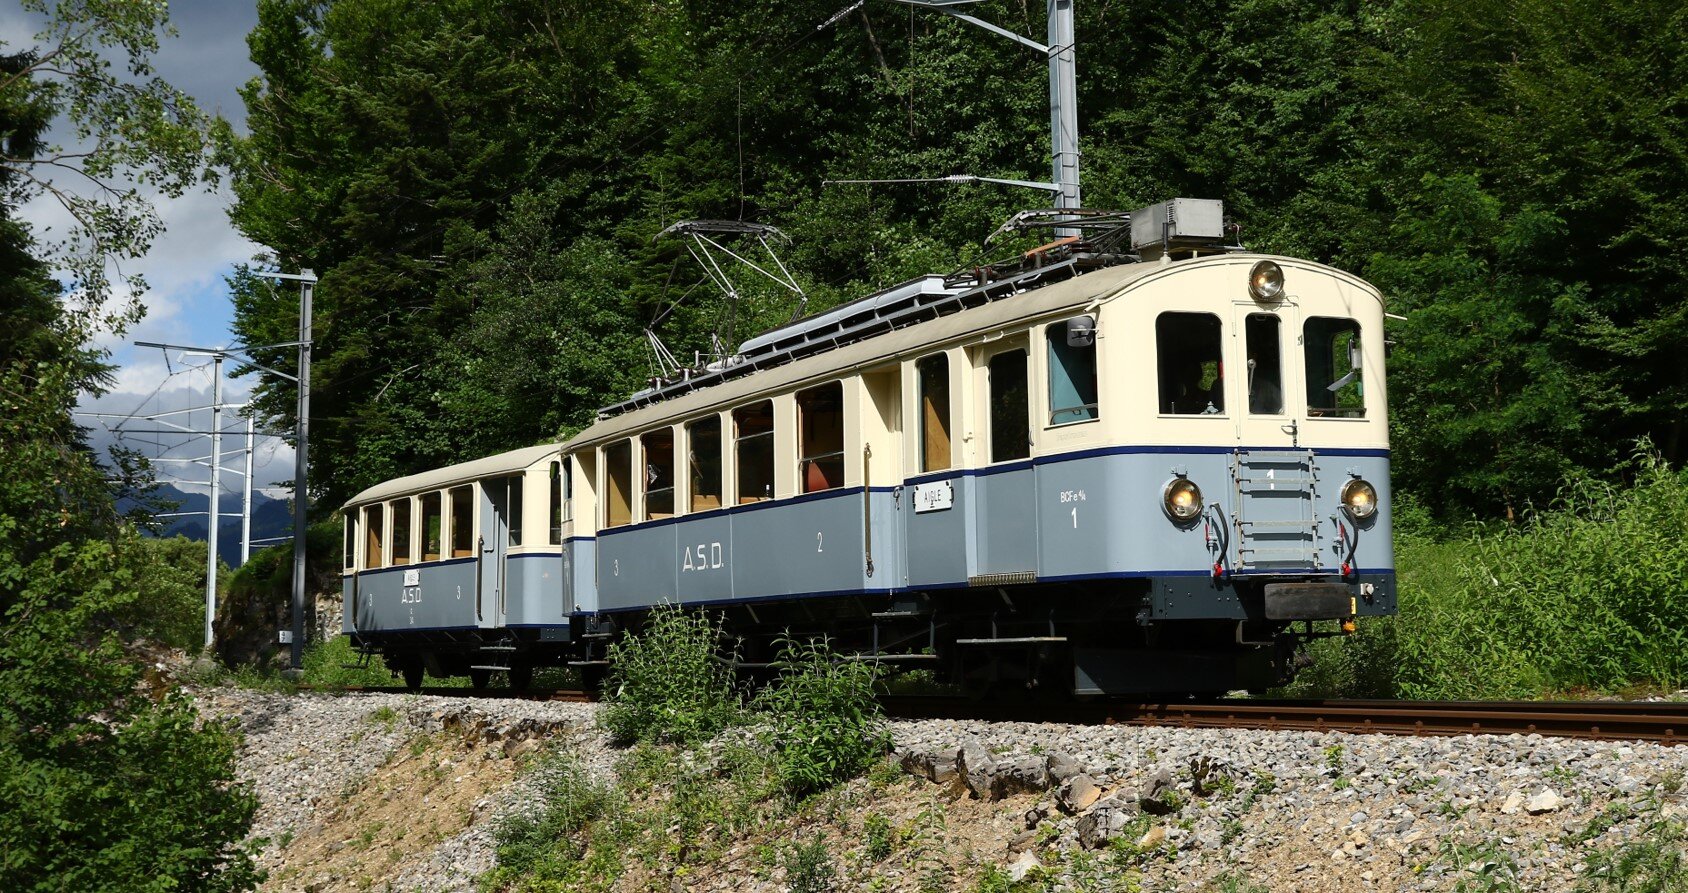 Le train historique, "Le TransOrmonan"